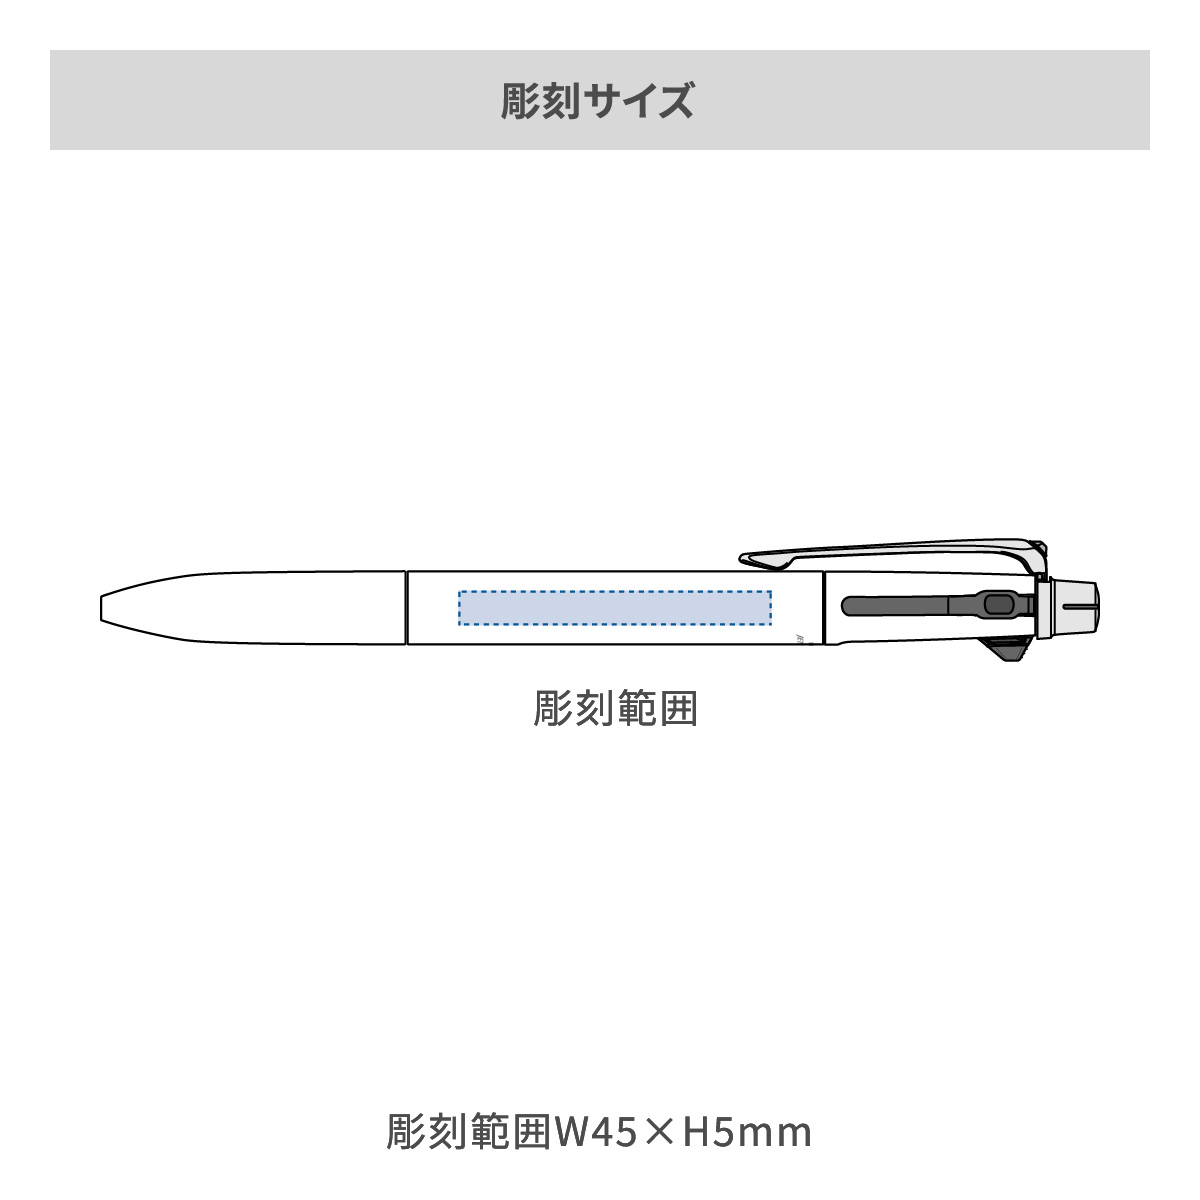 【短納期】三菱鉛筆 ジェットストリーム プライム 多機能ペン 2&1 0.7mmの名入れ範囲